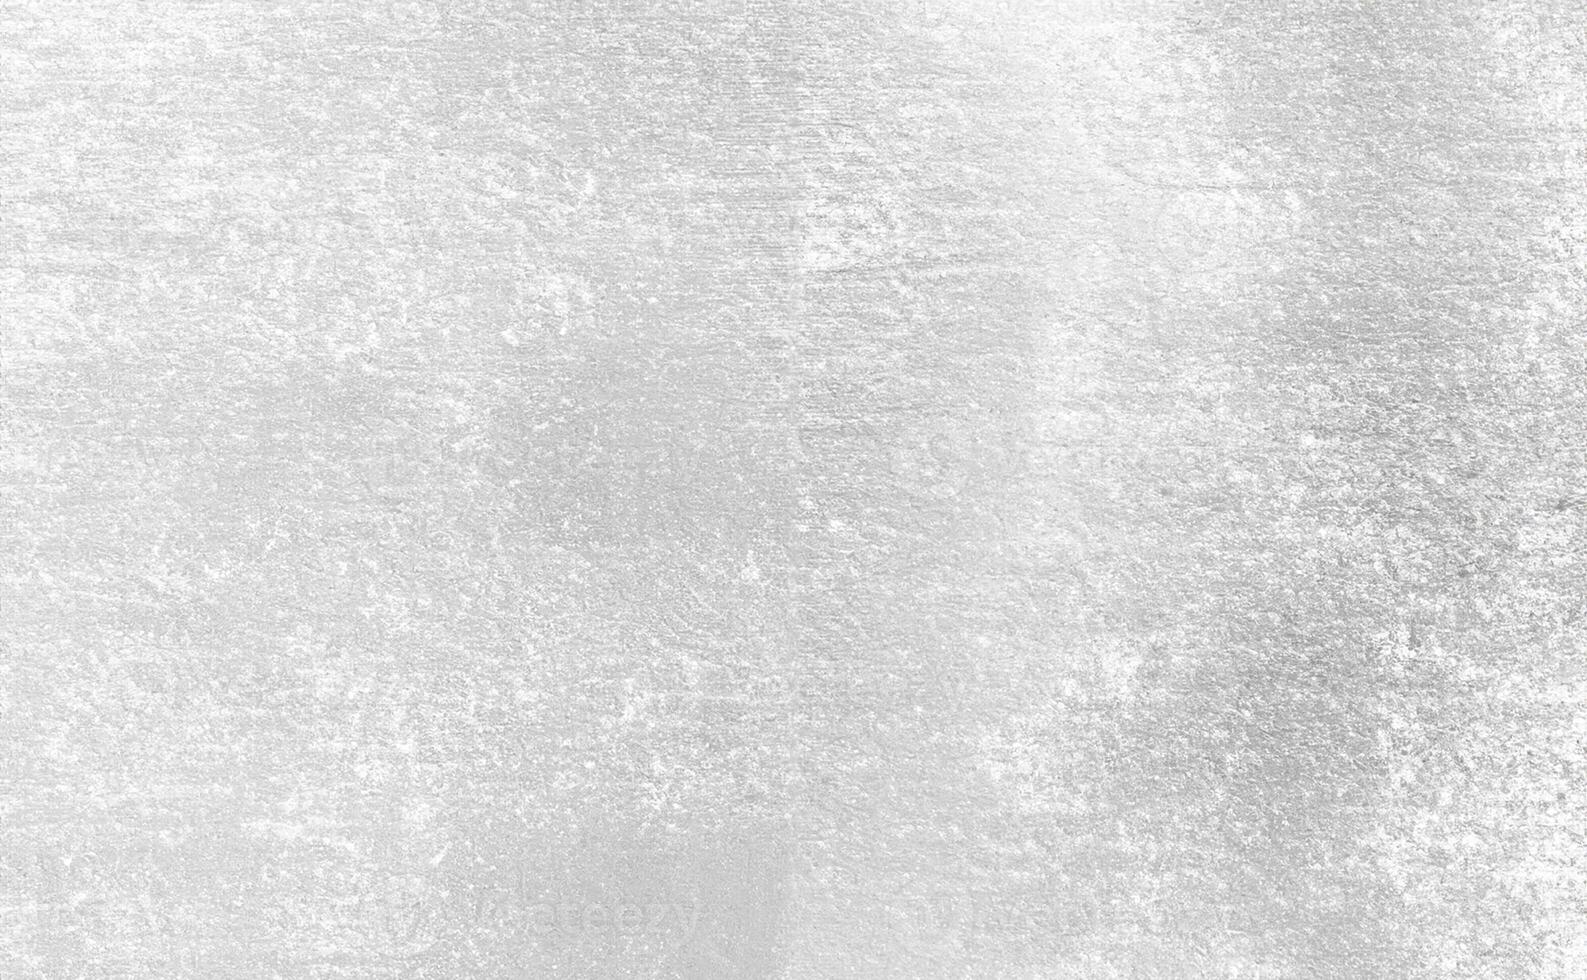 Shimmering Silver Foil Paper, Elegant Leaf Texture Background photo